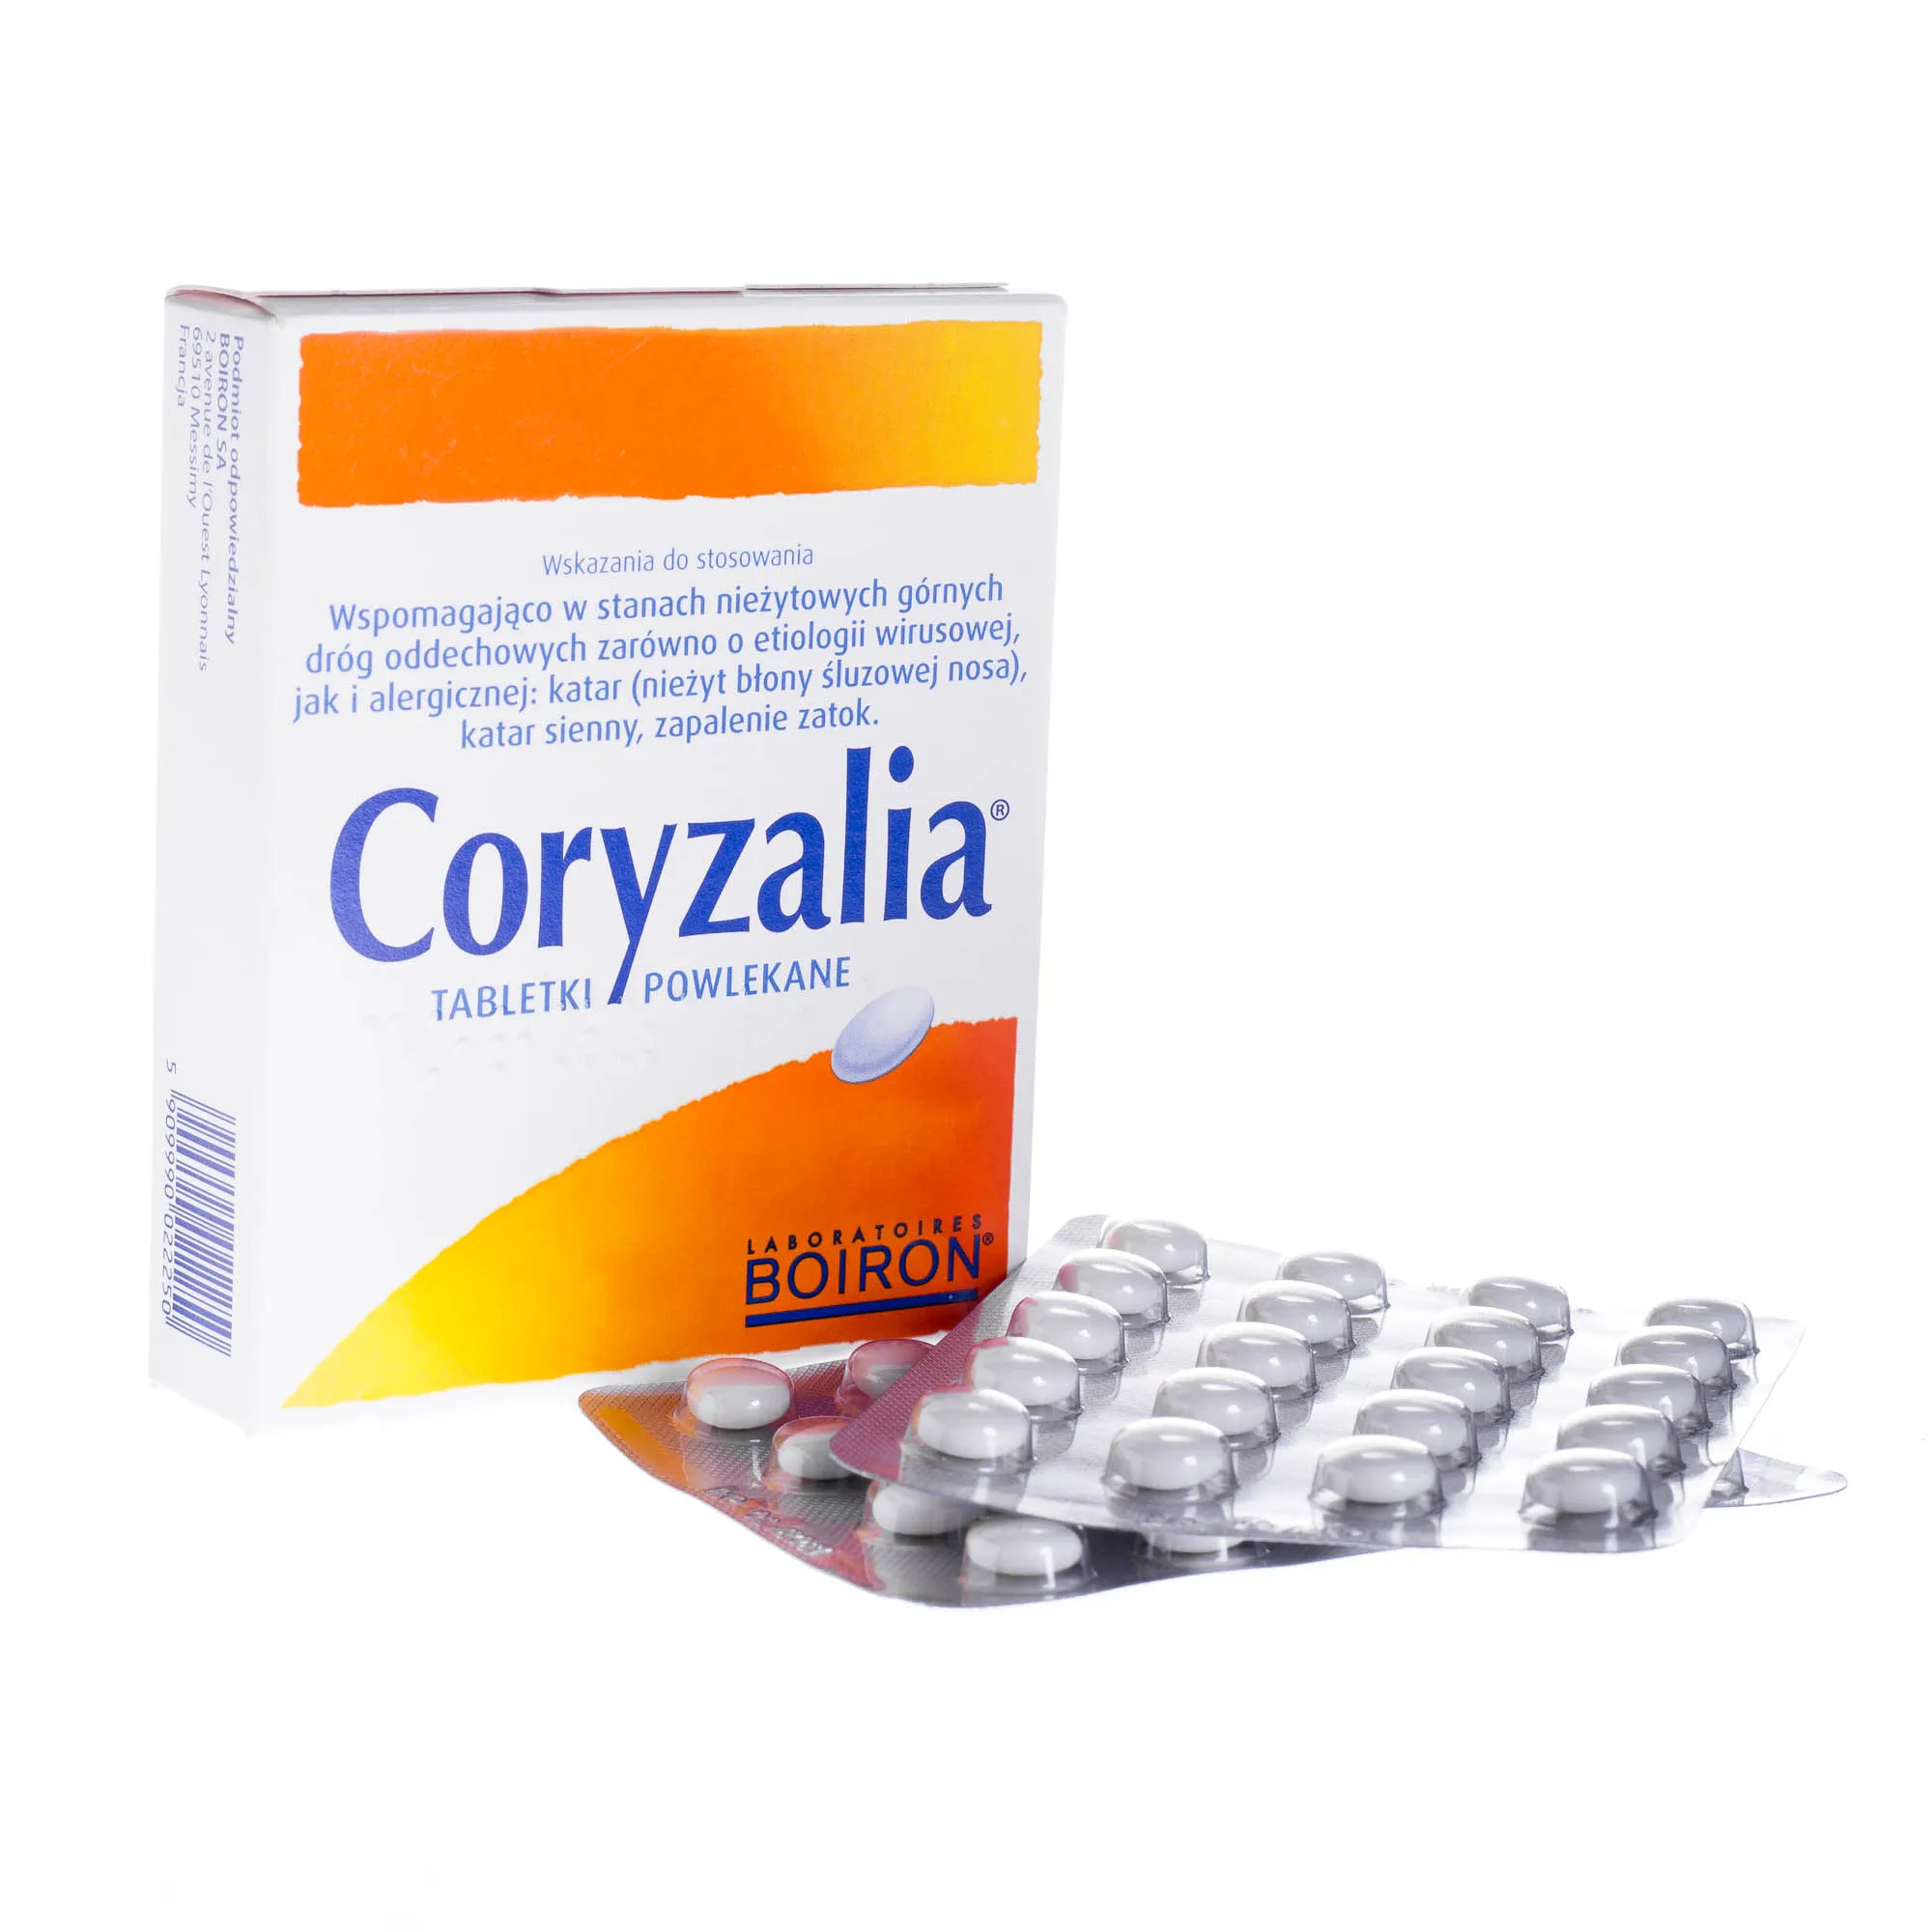 Coryzalia - tabletki powlekane działające wspomagająco w stanach nieżytowych górnych dróg oddechowych, 40 szt. 